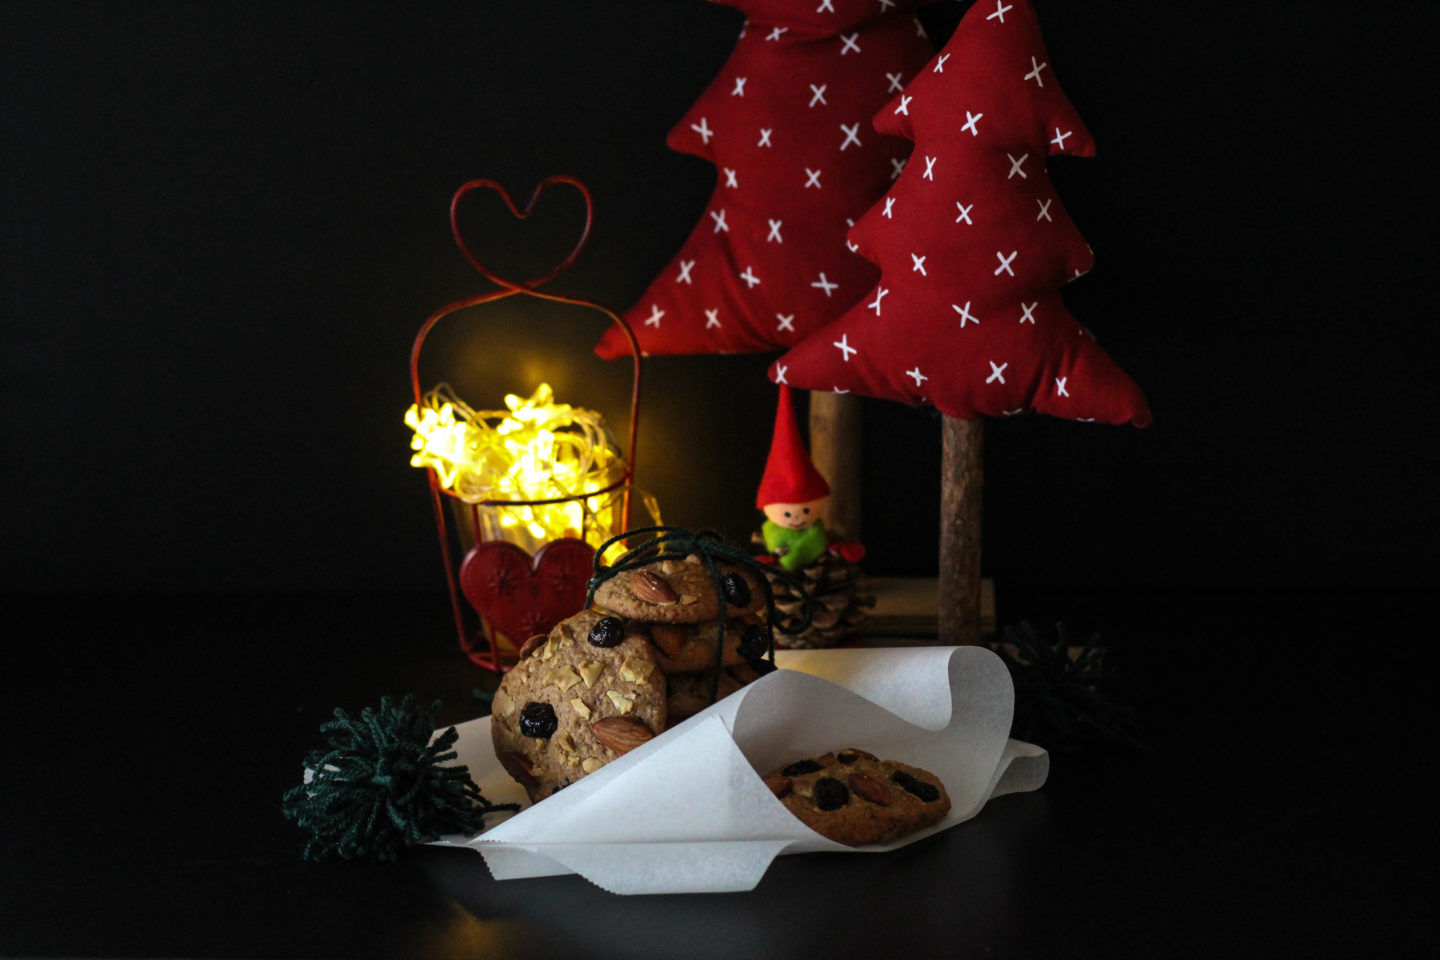 vegane-cookies-schokolade-cranberrys-weihnachten-christmas-1-von-1-4